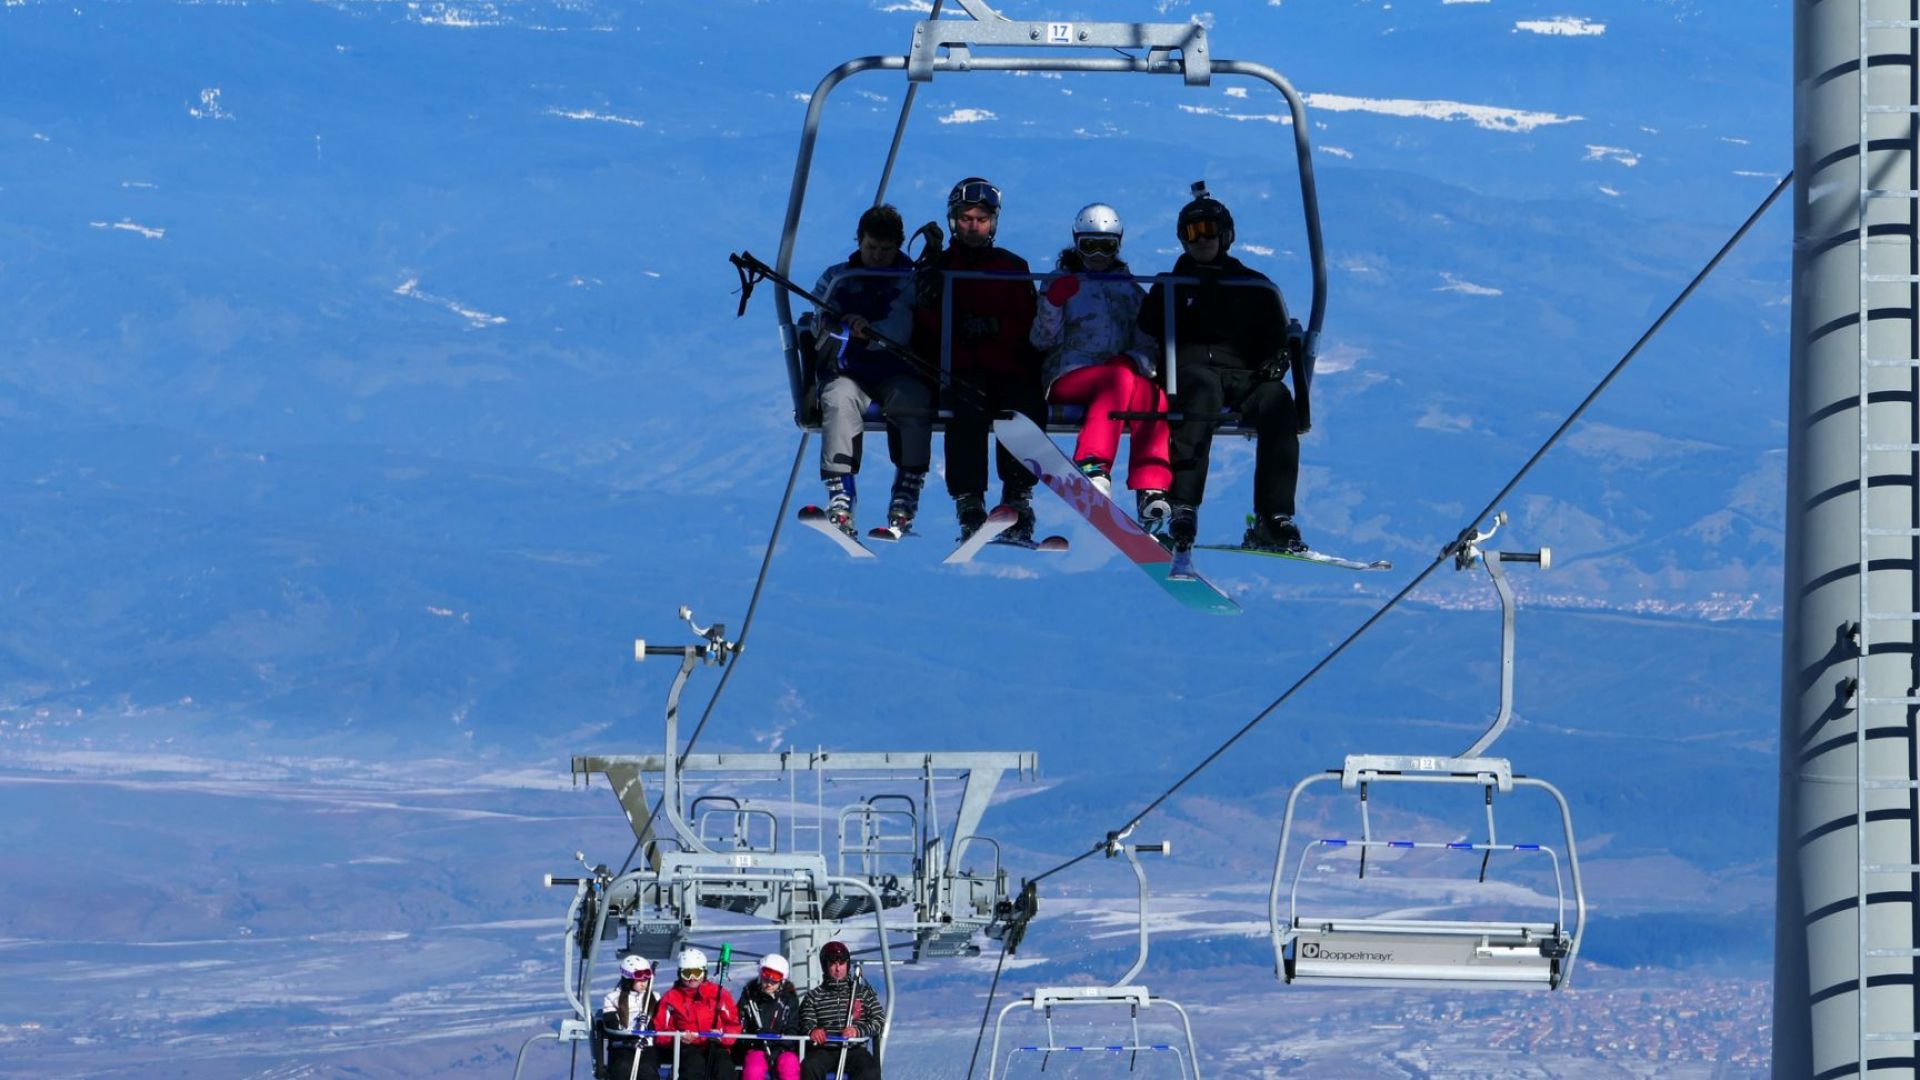 Чувствително поскъпват картите за лифтове и хотели в Австрия - скиспортът се превръща в лукс